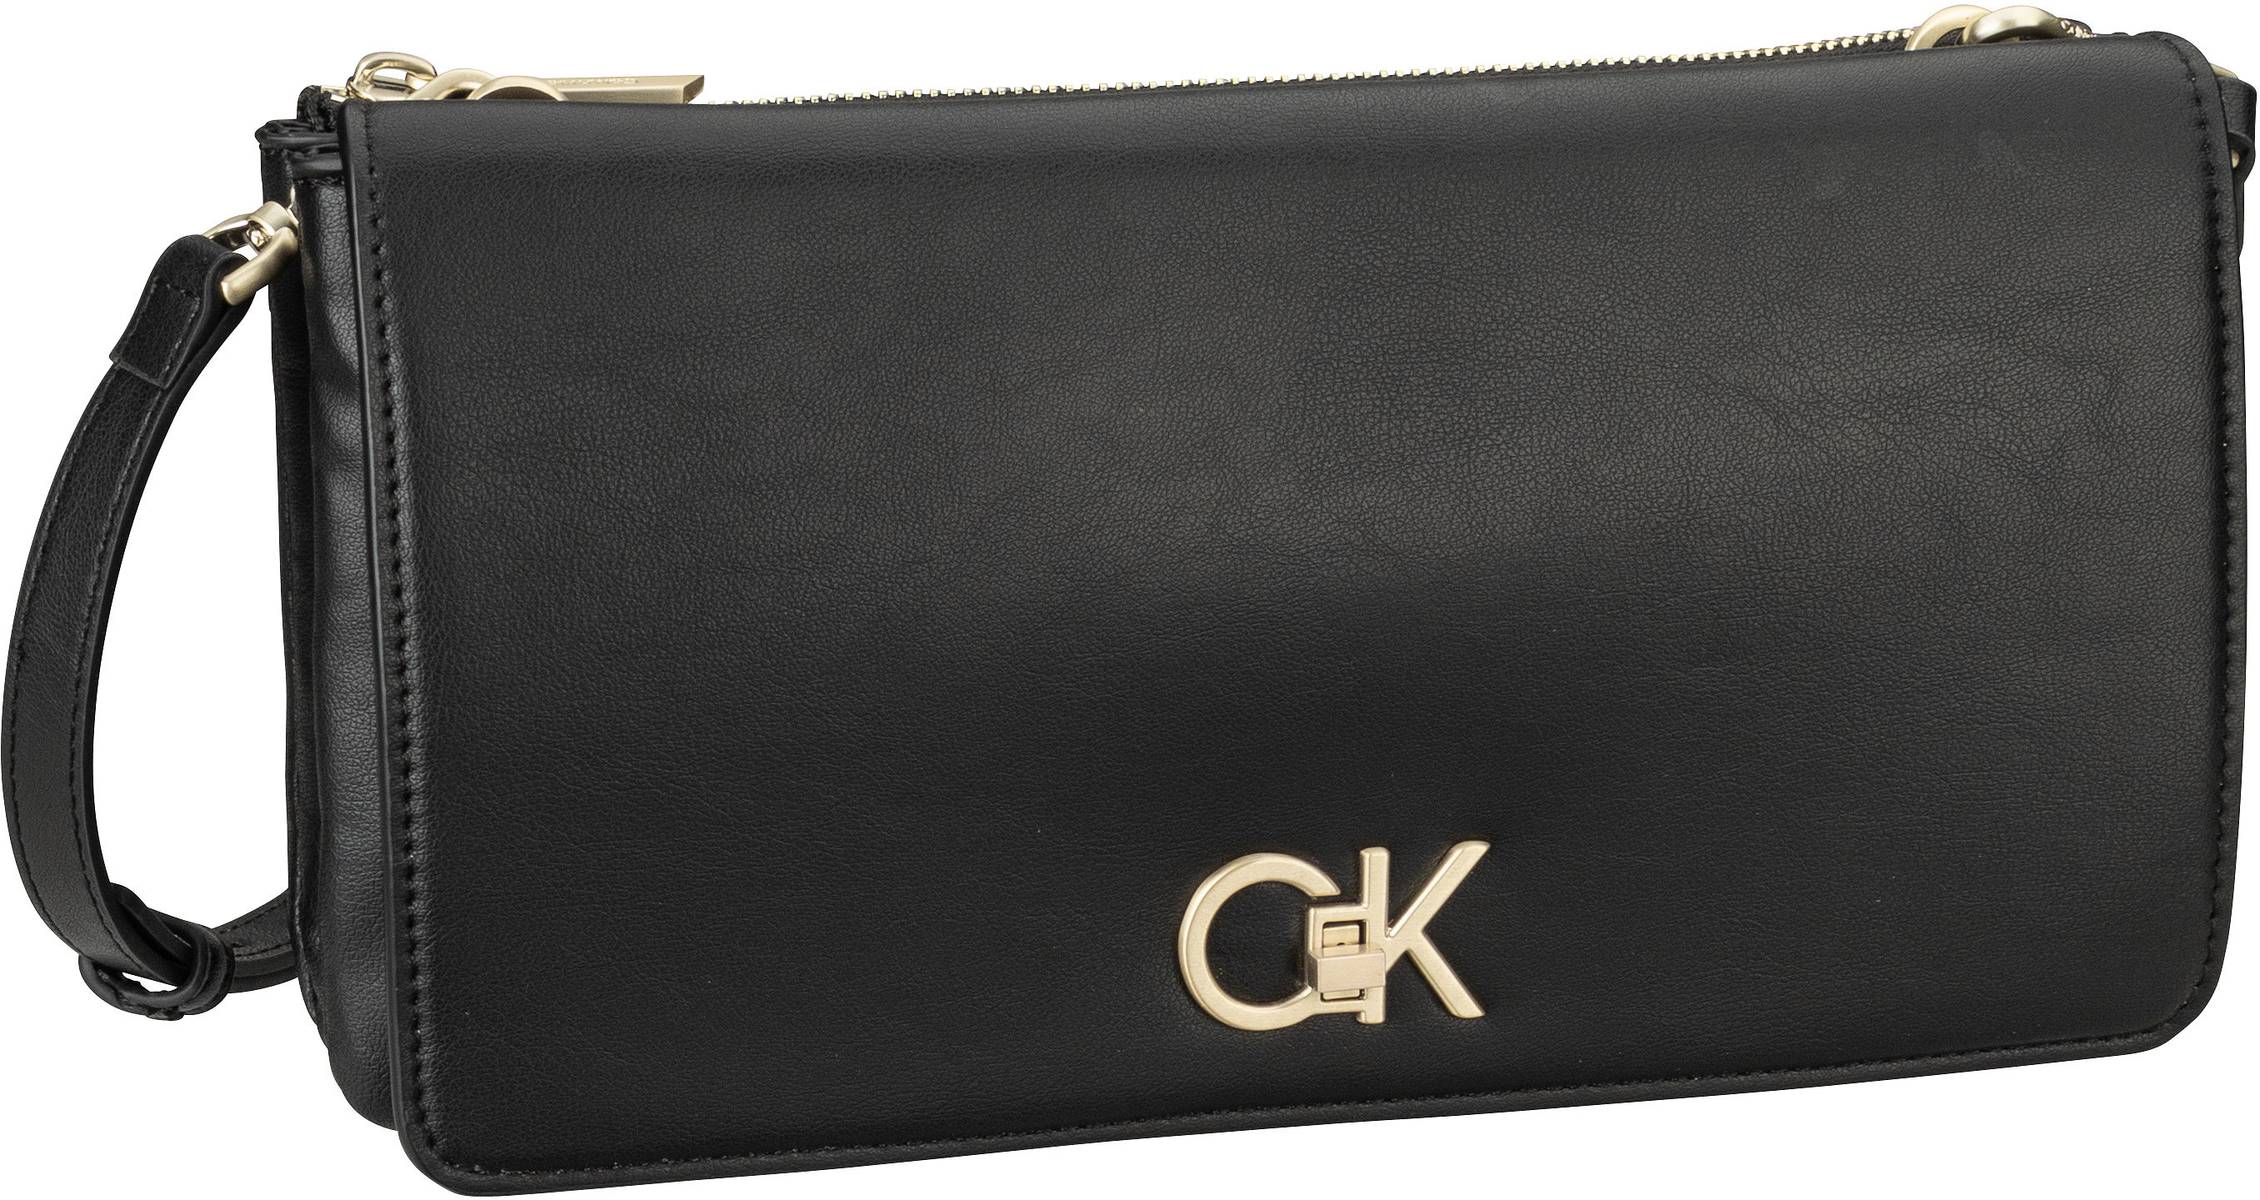 Calvin Klein Re-Lock Double Gusette PSP24  in Schwarz (2.1 Liter), Abendtasche